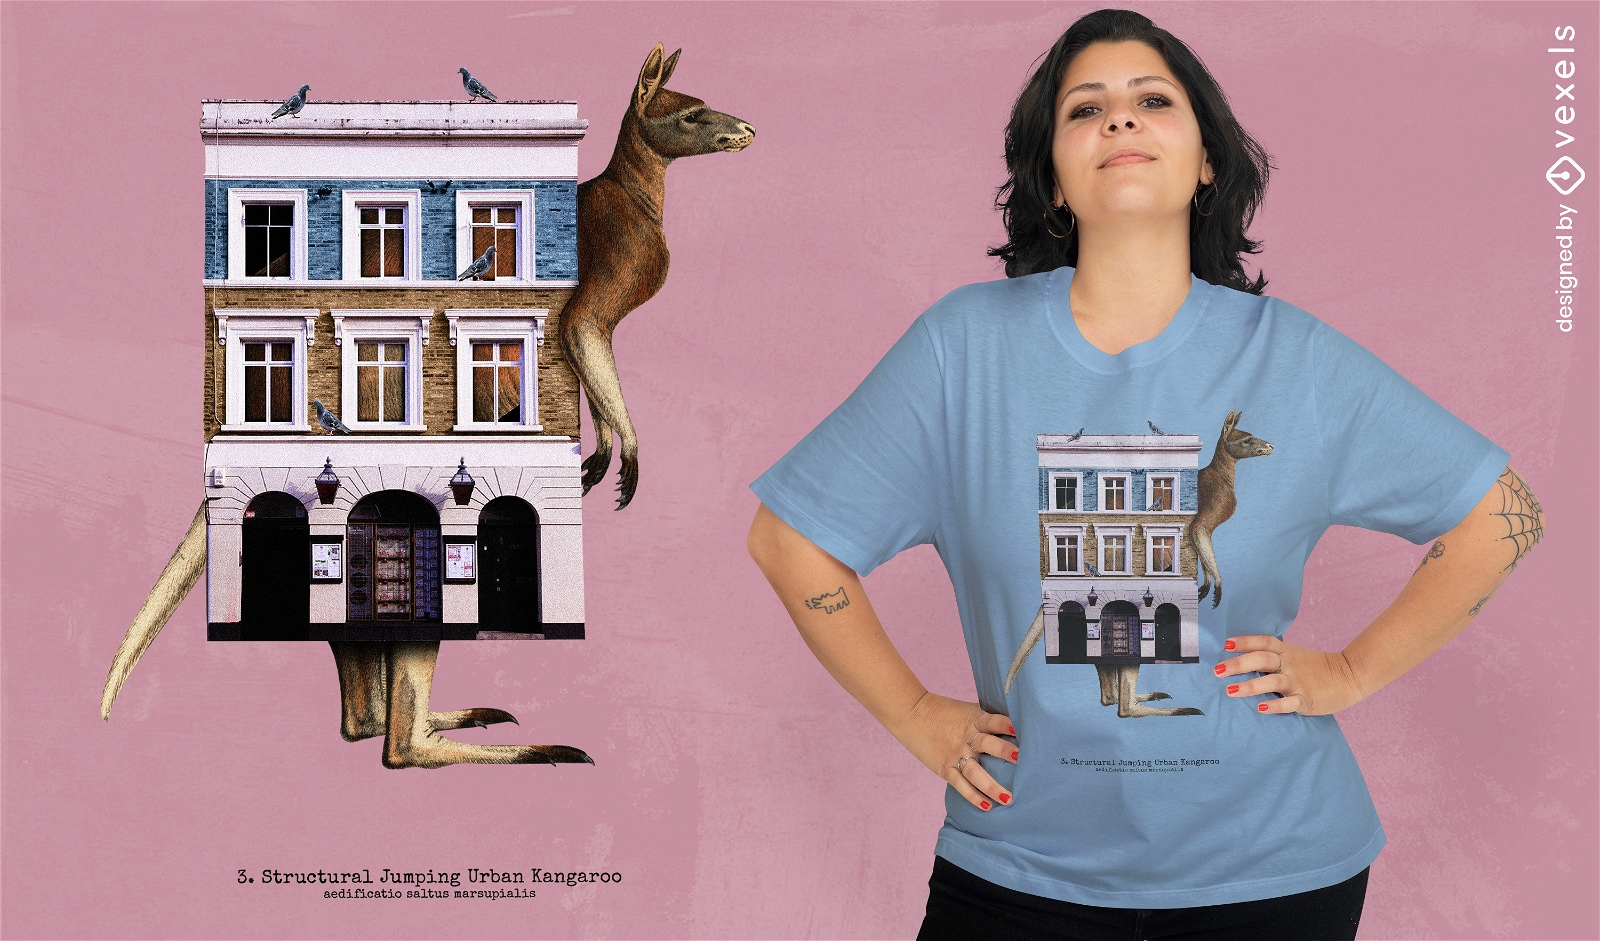 Kangaroo animal house building t-shirt psd